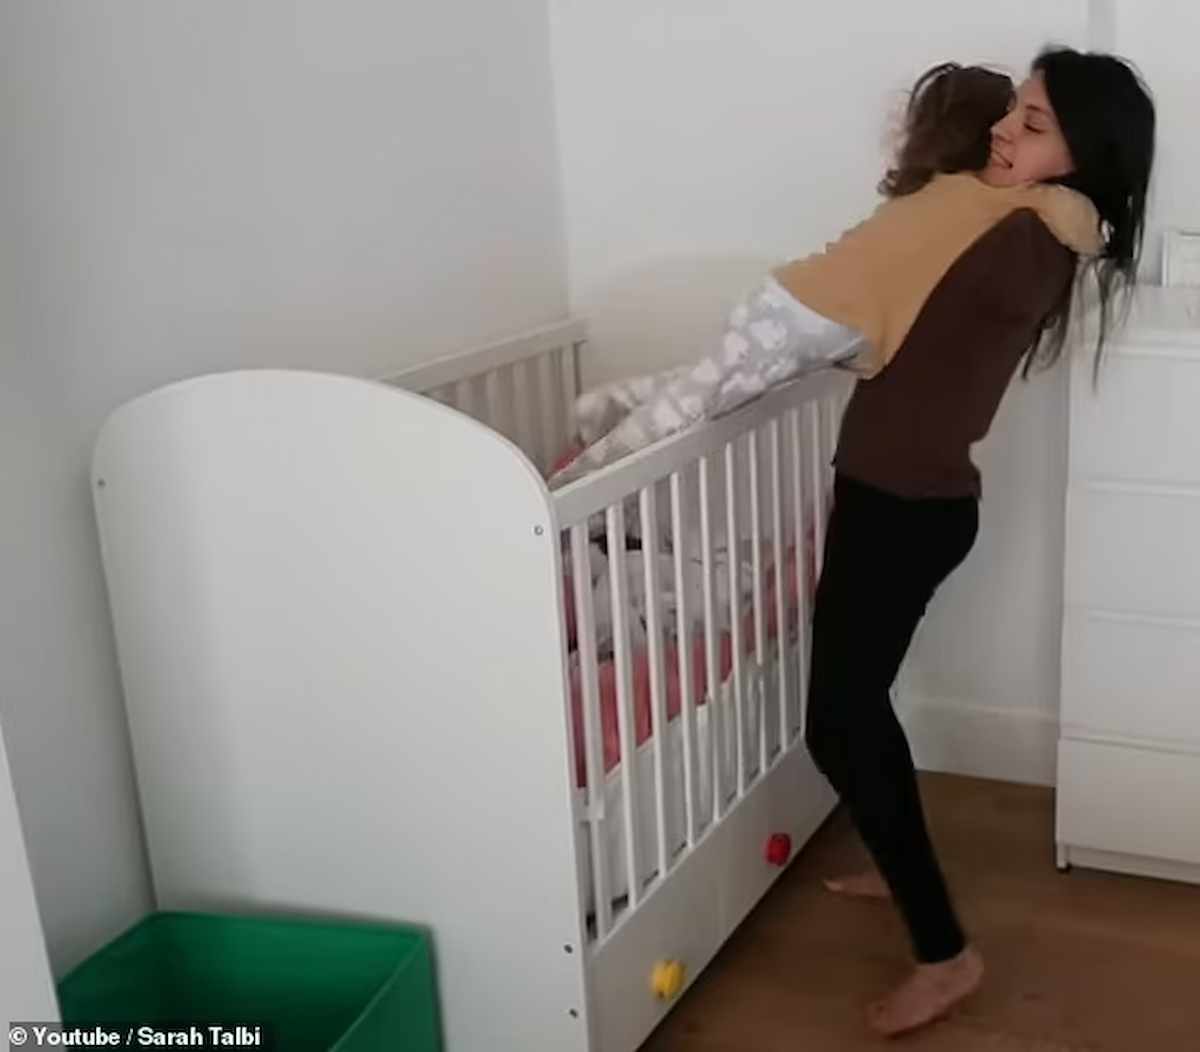 Sarah Talbi, artista belga nata senza braccia racconta la maternità: "Con i piedi posso vestire e lavare mia figlia"